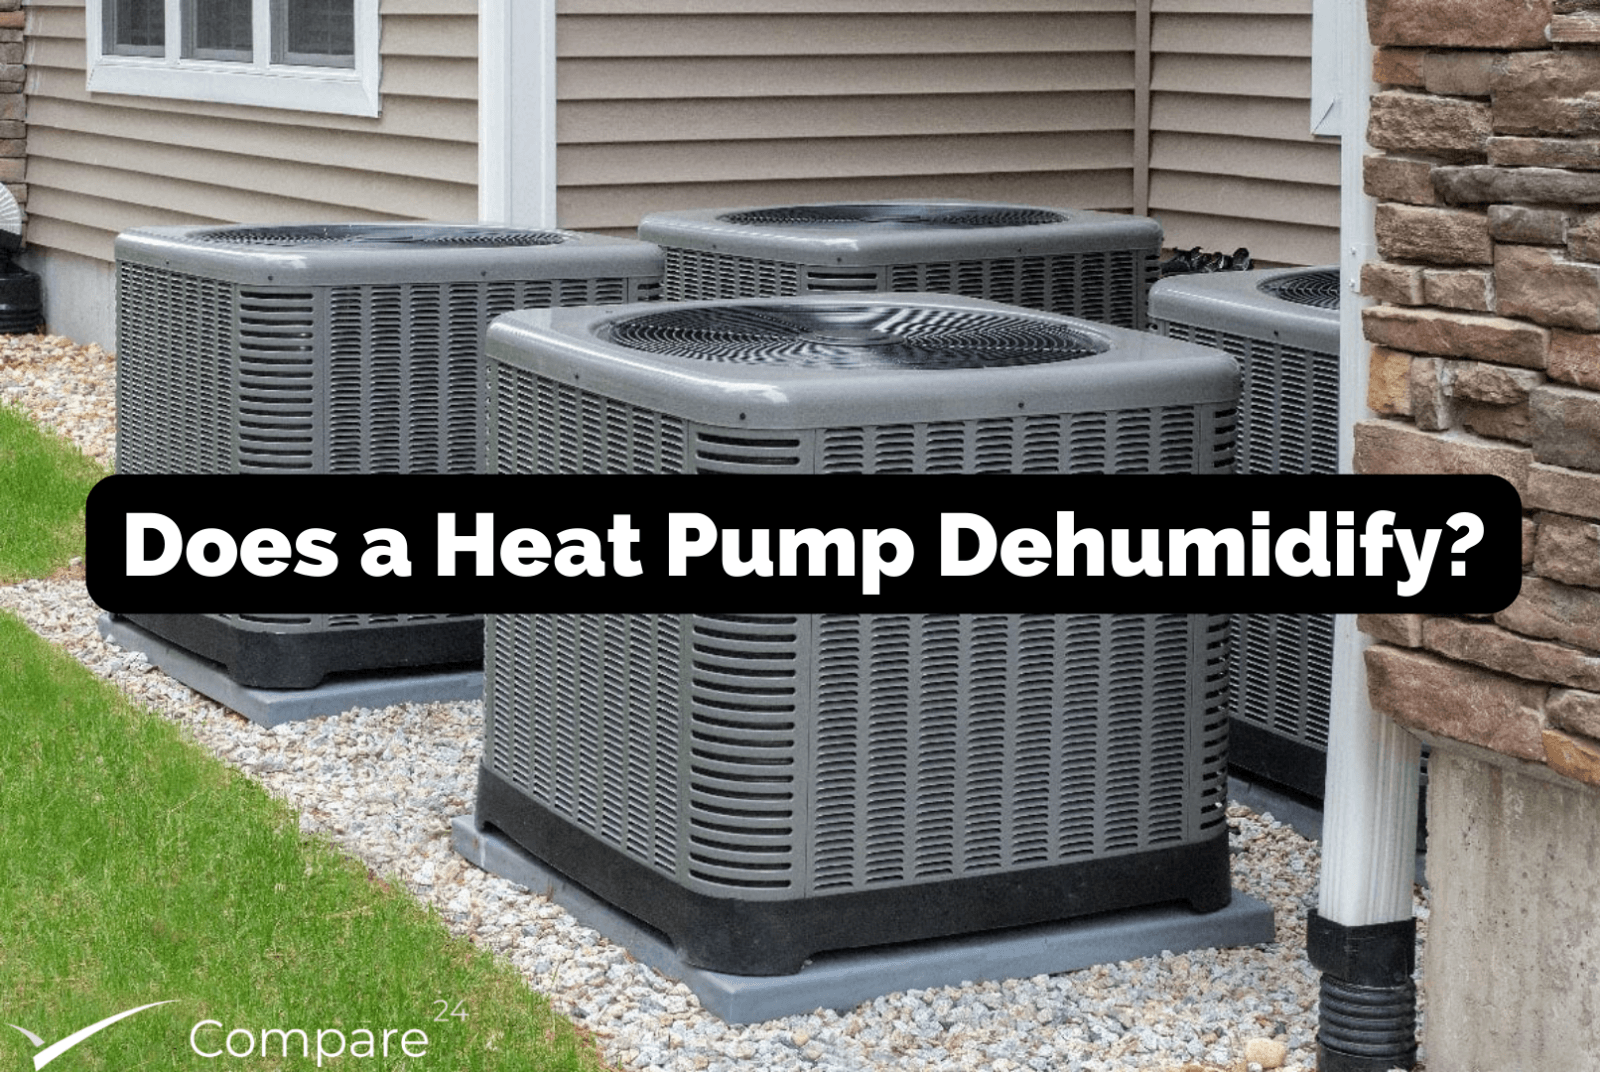 Heat Pump and Humidity: Does a Heat Pump Dehumidify?